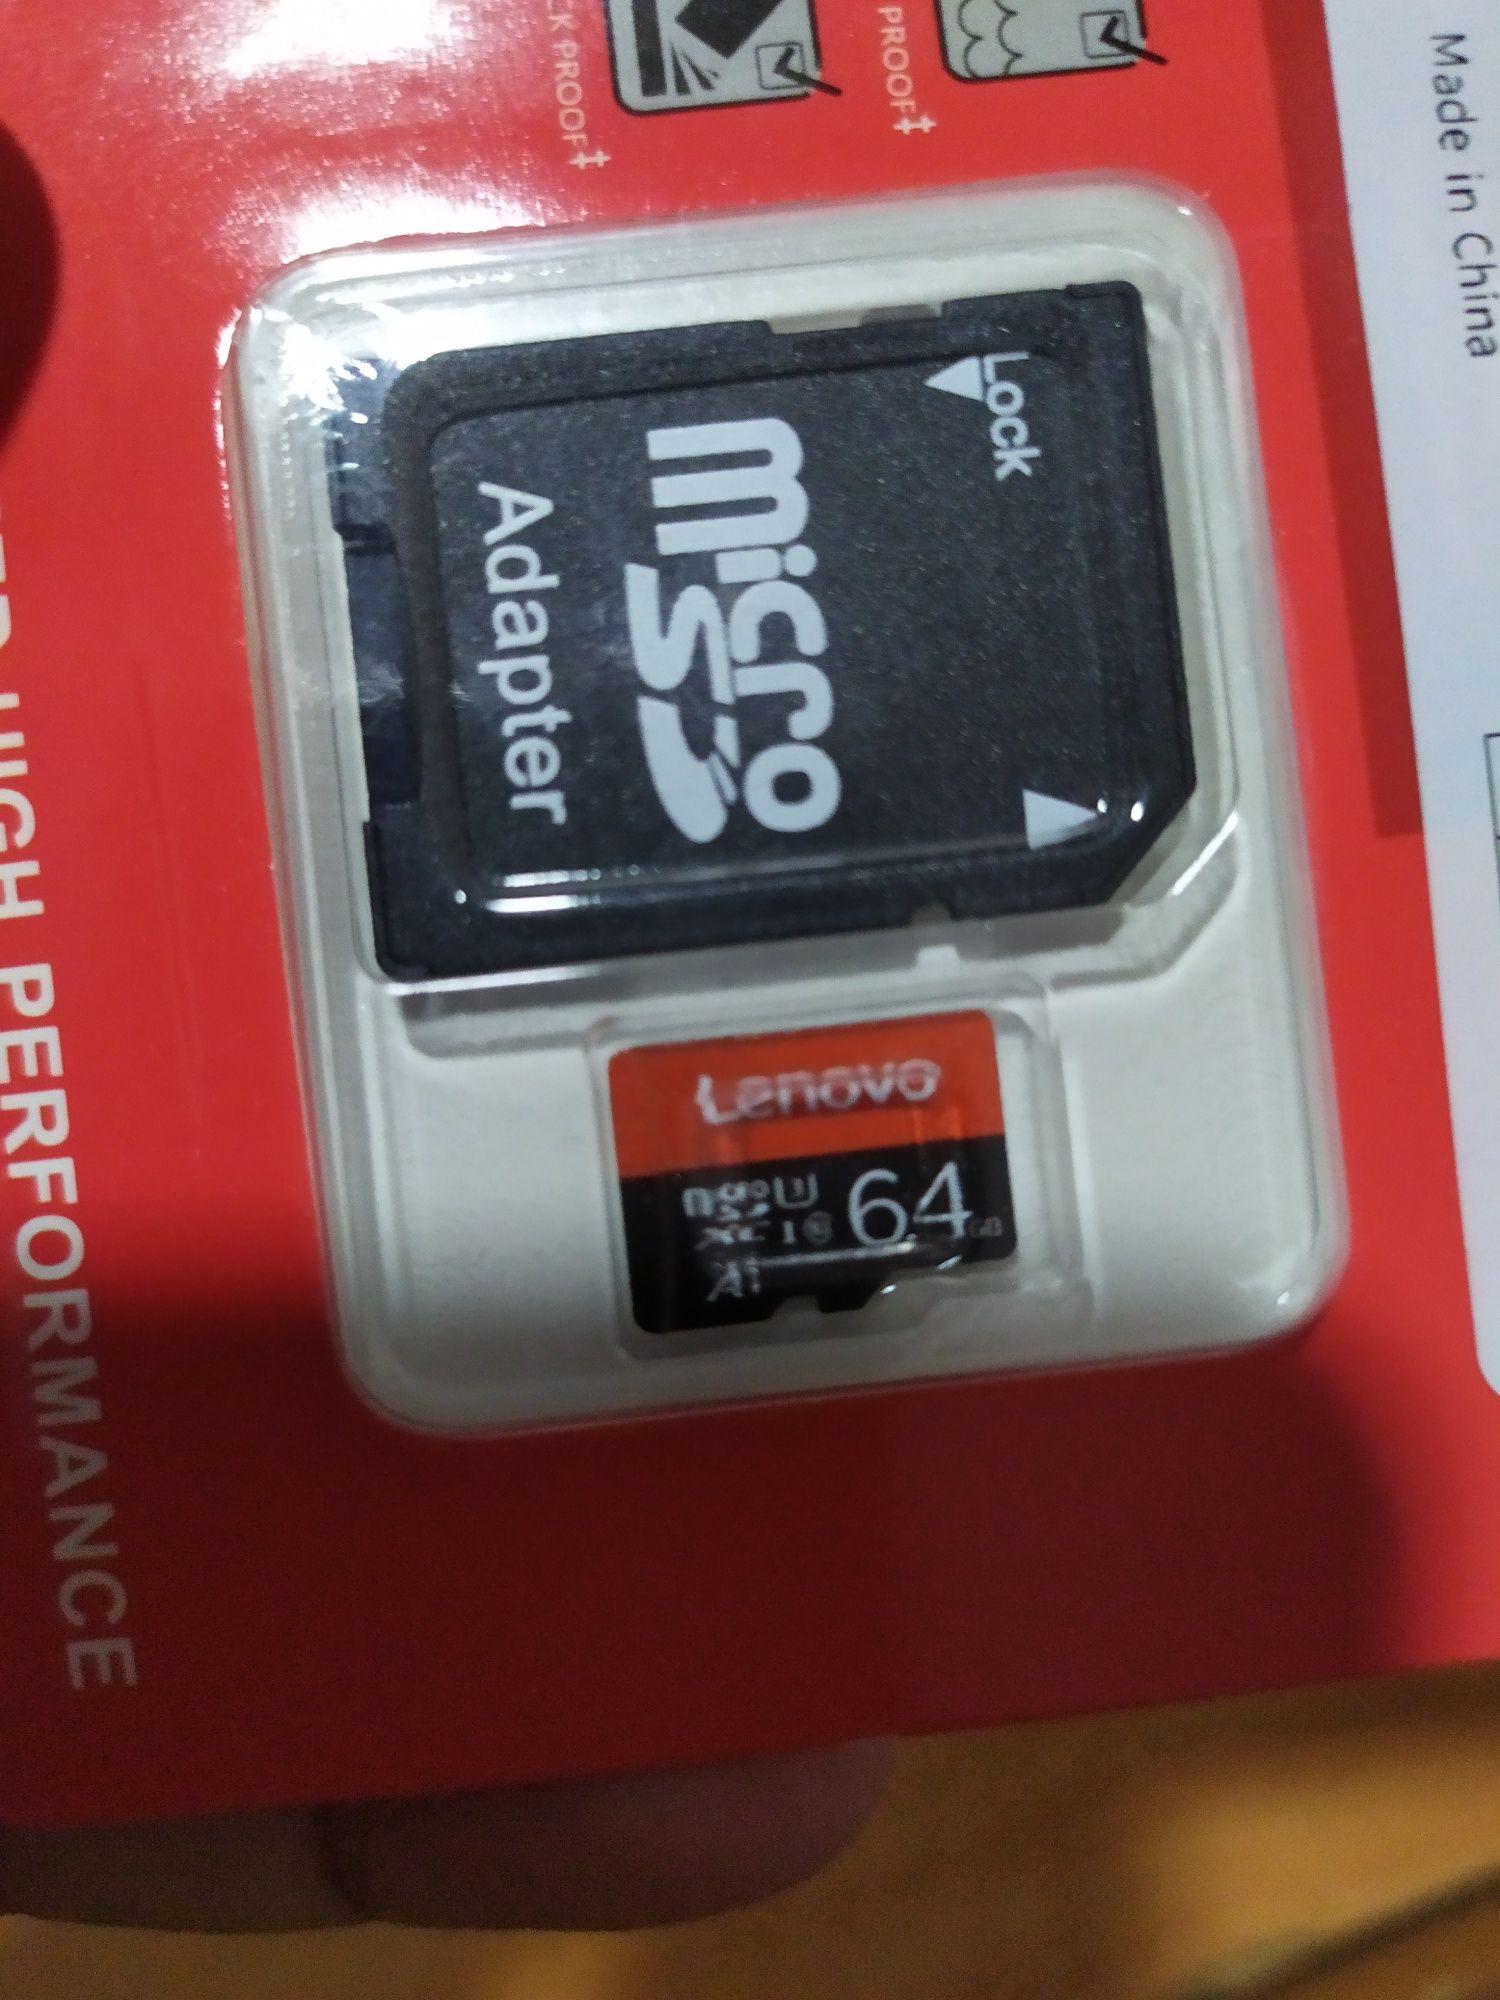 Lenovo 64,128,256 gb micro sd fleshkalar sotiladi